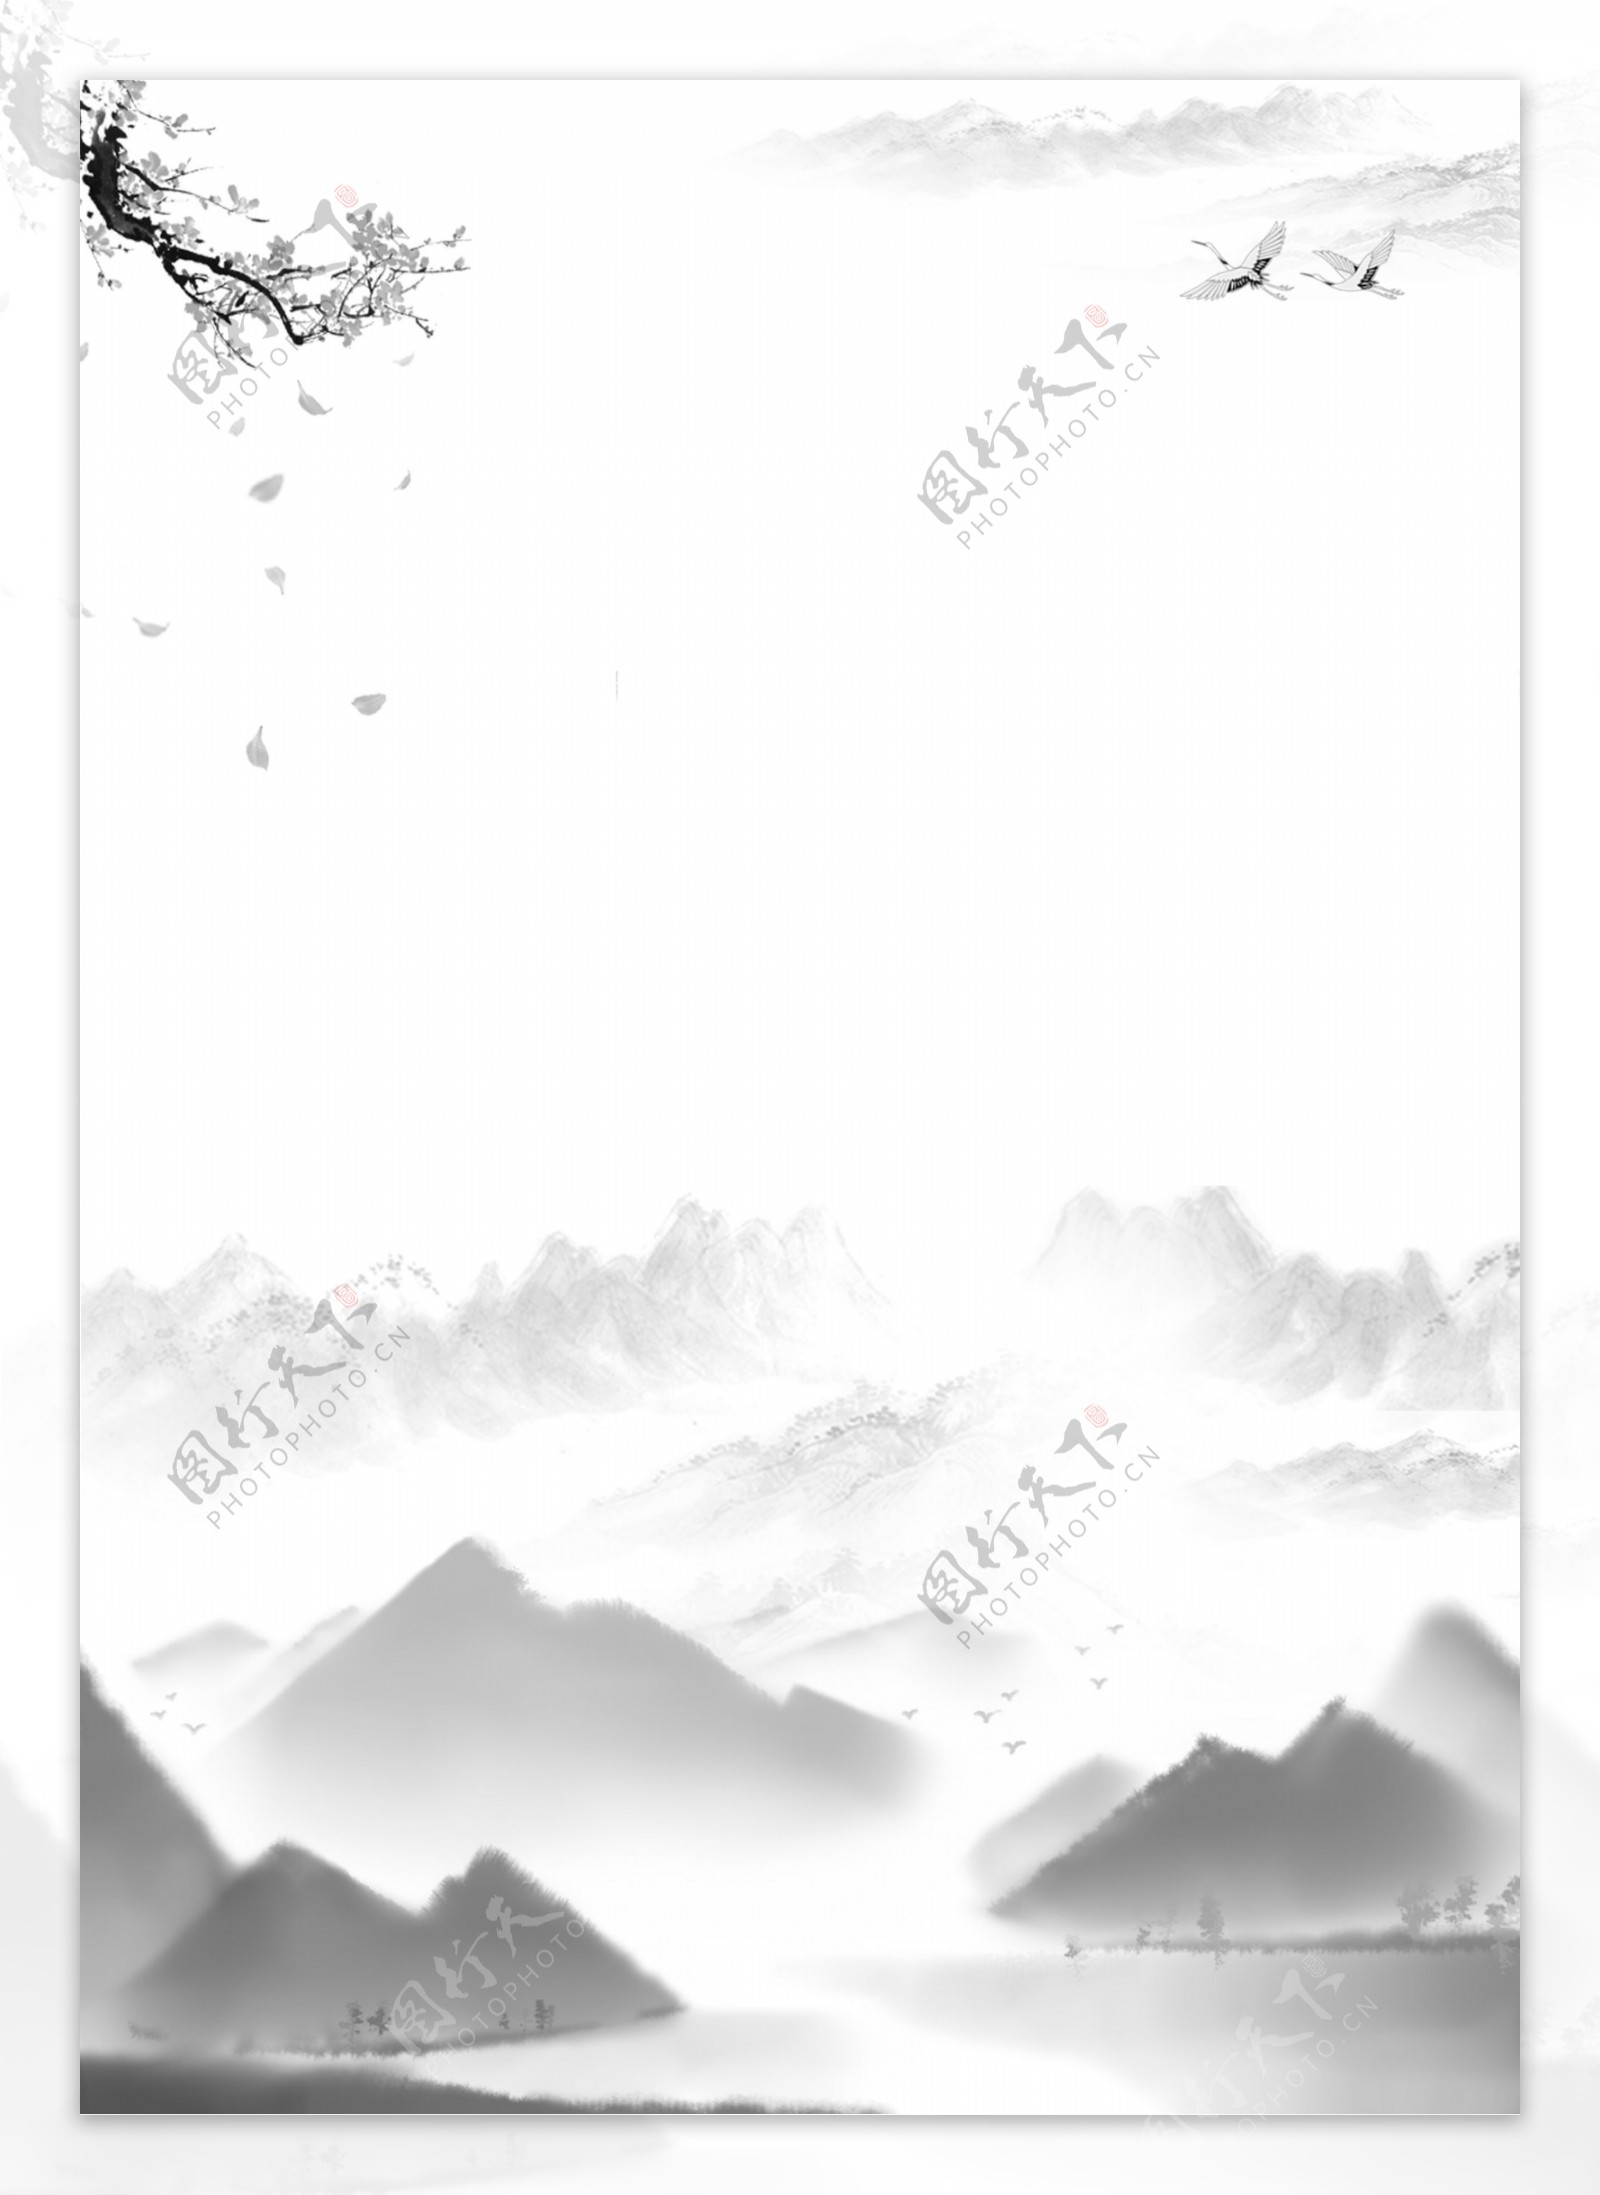 中国风格的传统山水黑白墨水风格背景